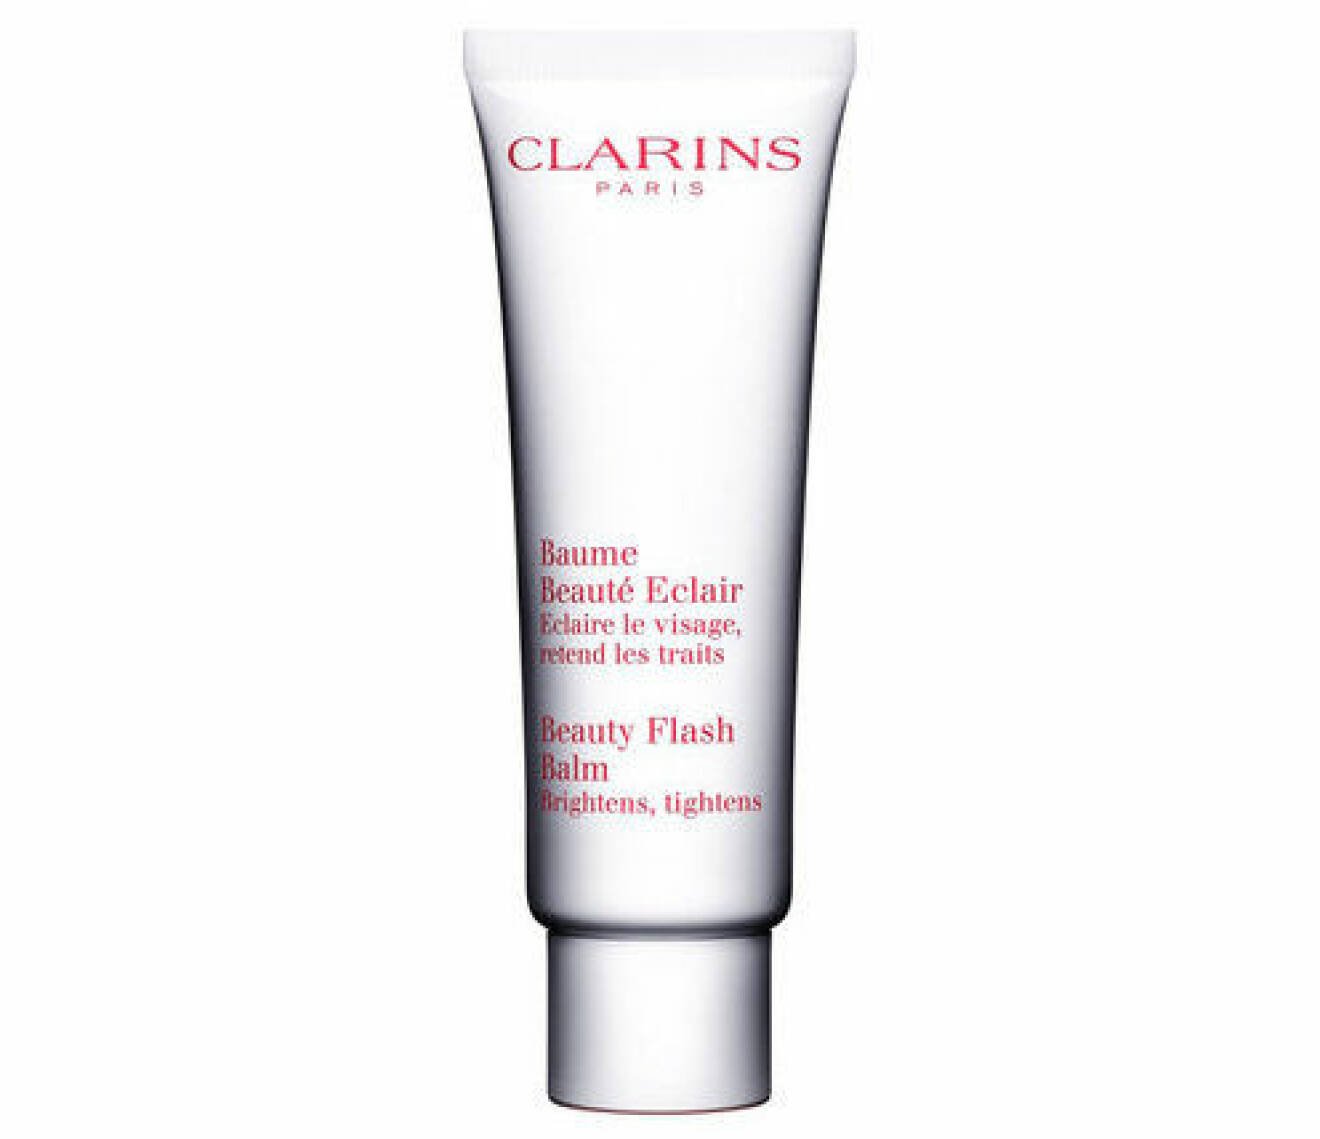 En bild på produkten Clarins –Beauty Flash Balm som går att köpa på sajten Lyko.